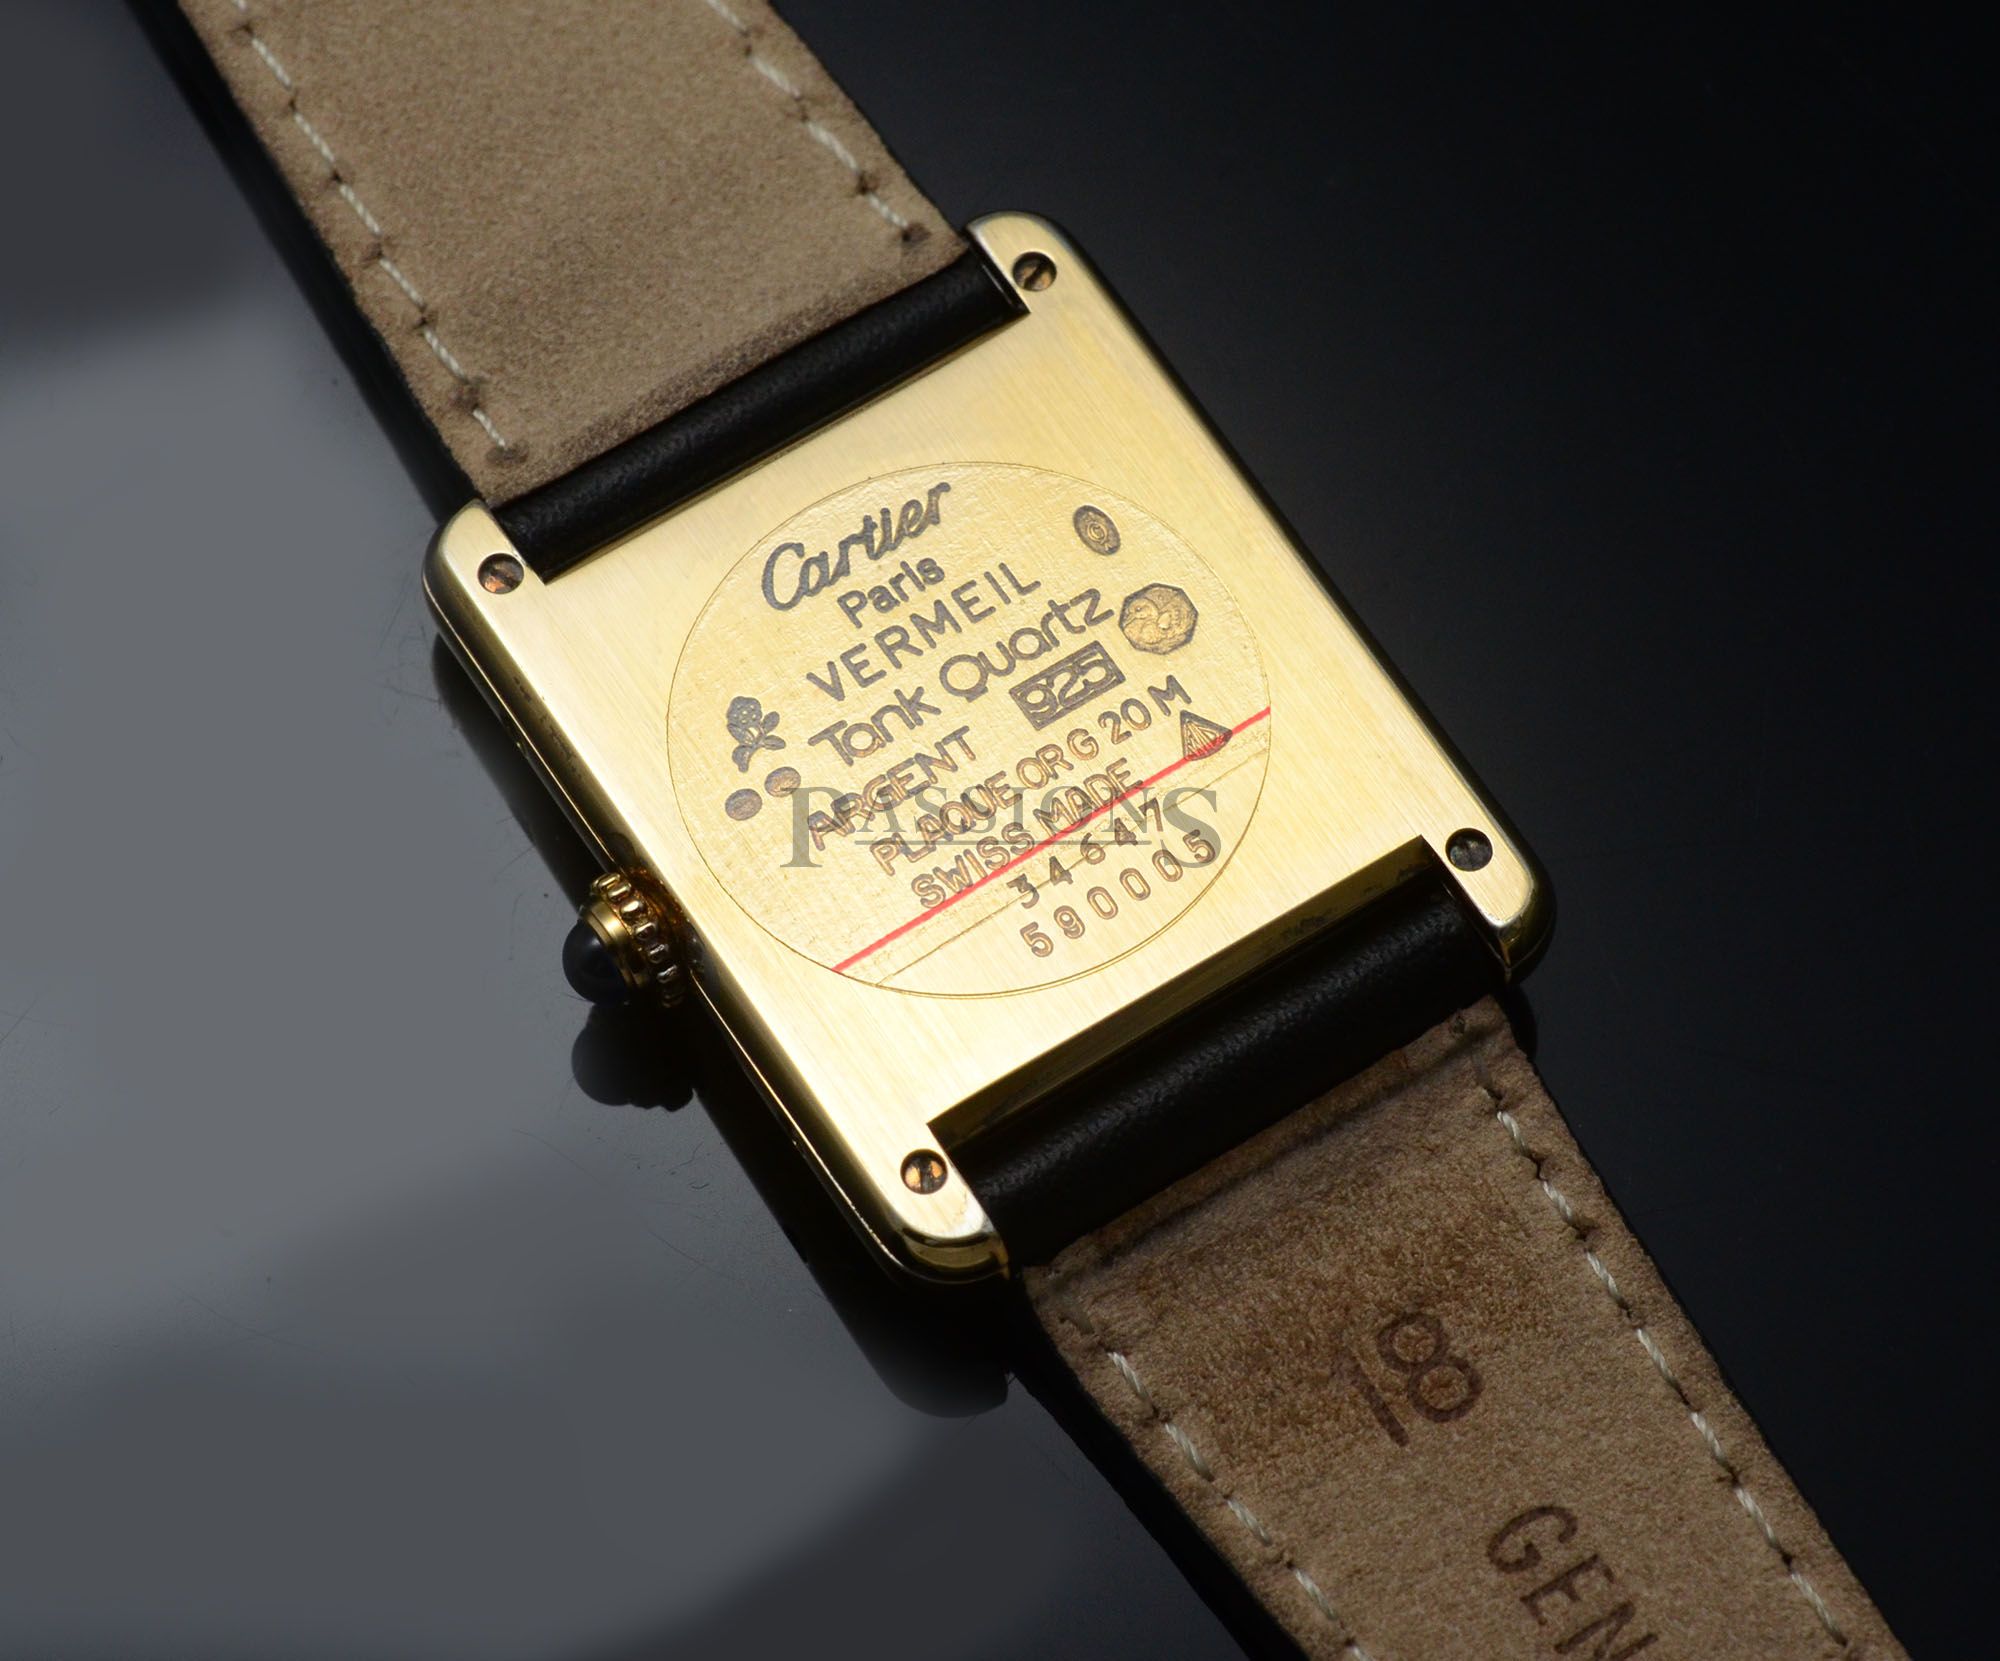 cartier 925 watch